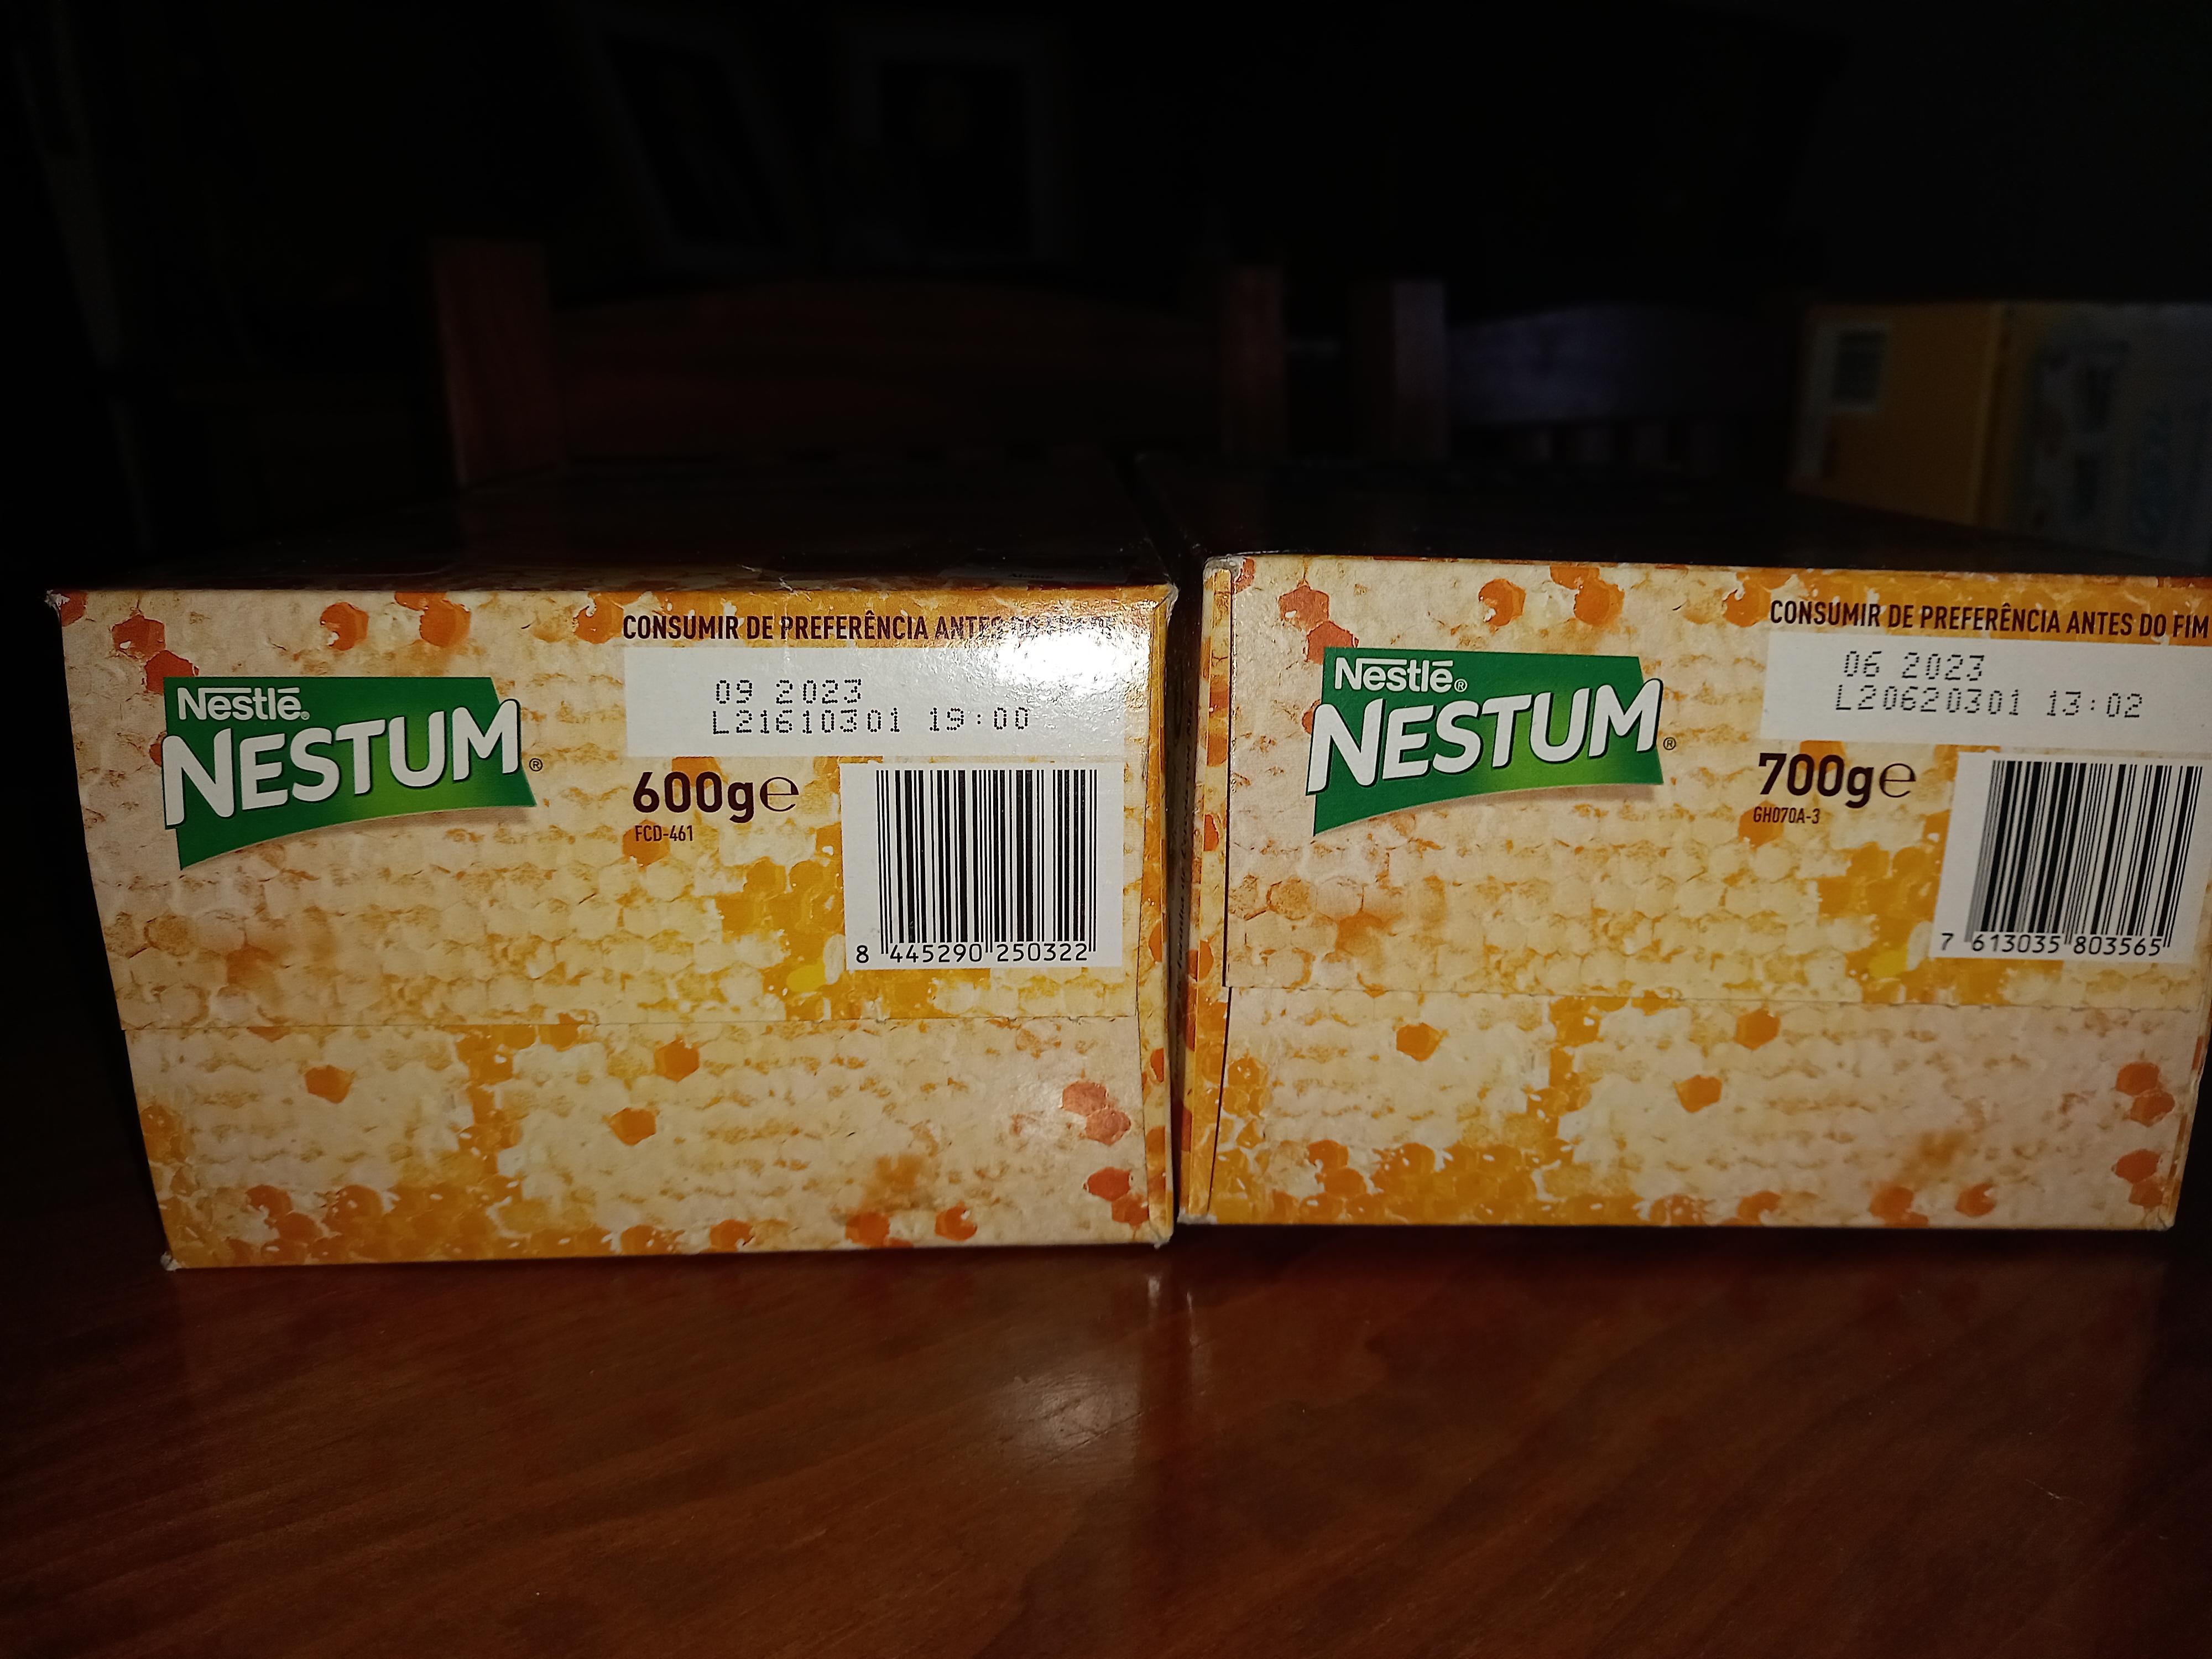 Nestum - A mesma embalagem e quantidade diferente